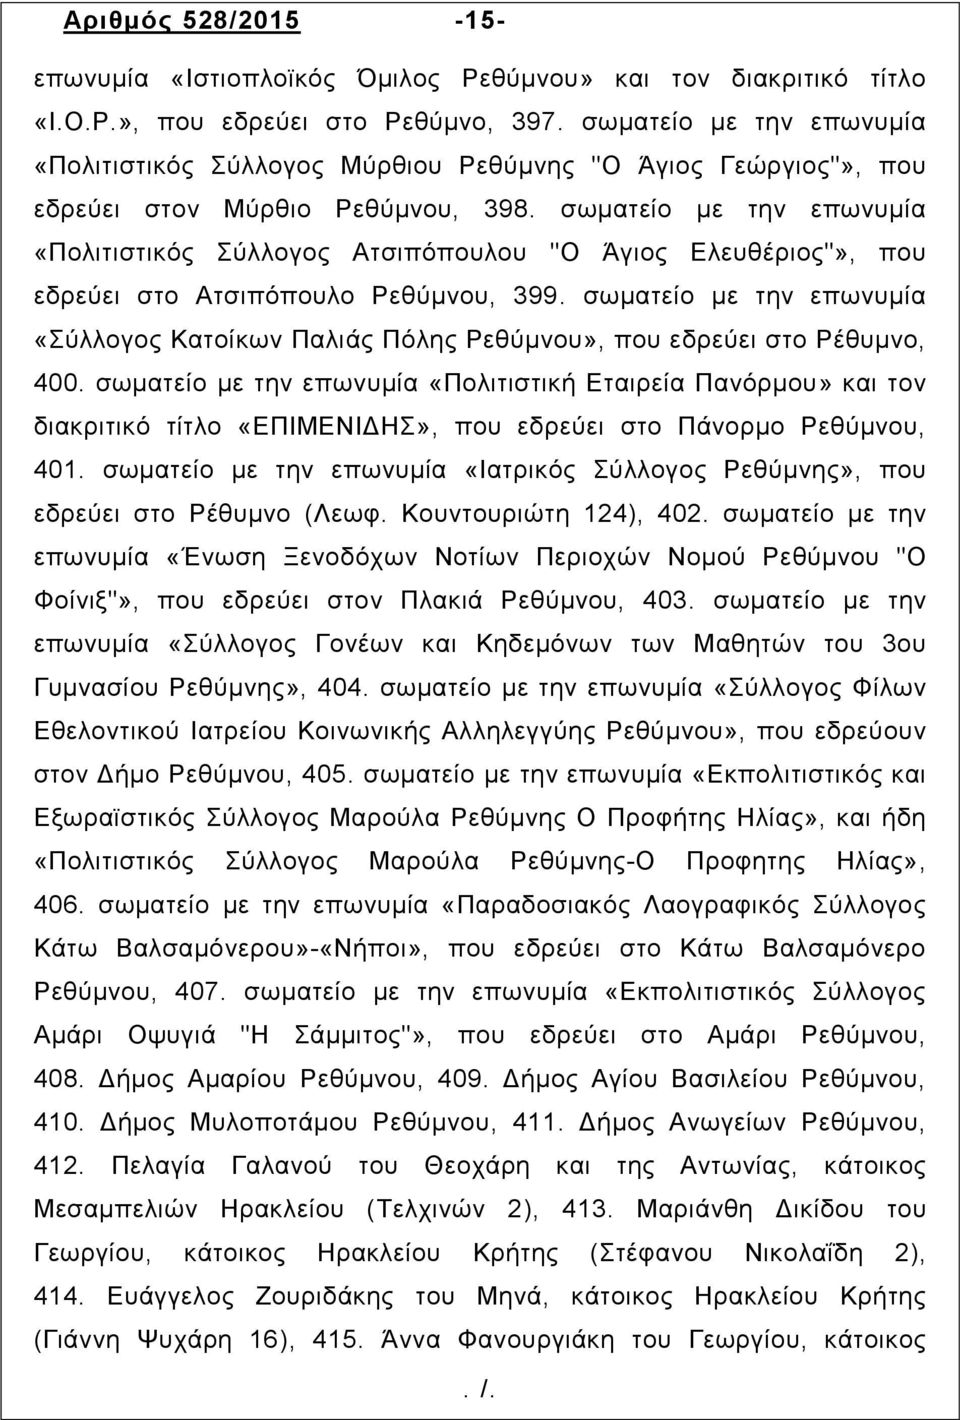 σωµατείο µε την επωνυµία «Πολιτιστικός Σύλλογος Ατσιπόπουλου "Ο Άγιος Ελευθέριος"», που εδρεύει στο Ατσιπόπουλο Ρεθύµνου, 399.